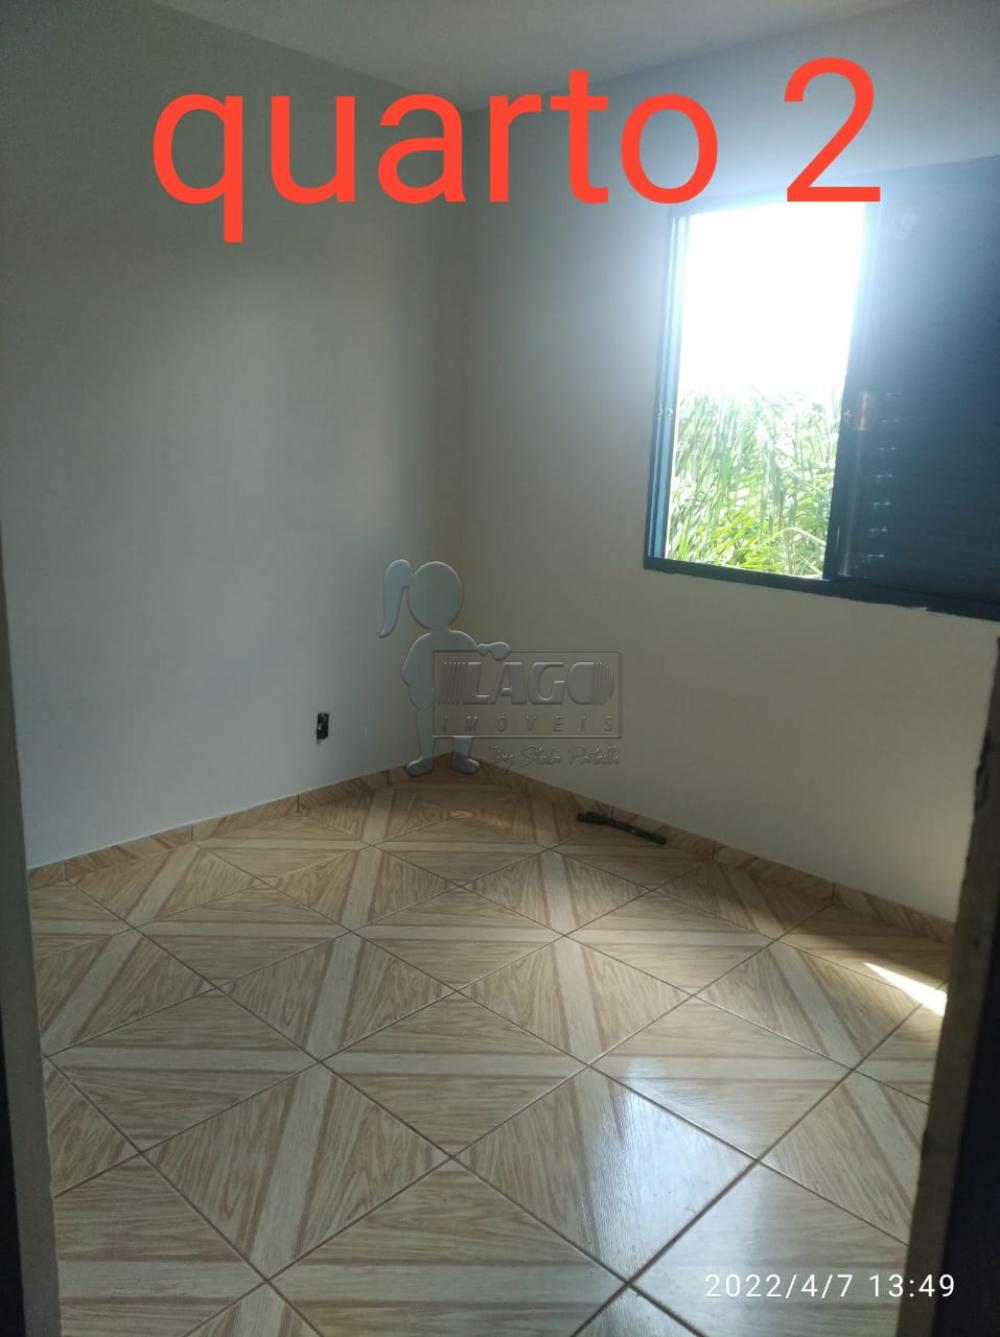 Comprar Apartamento / Padrão em Ribeirão Preto R$ 120.000,00 - Foto 6